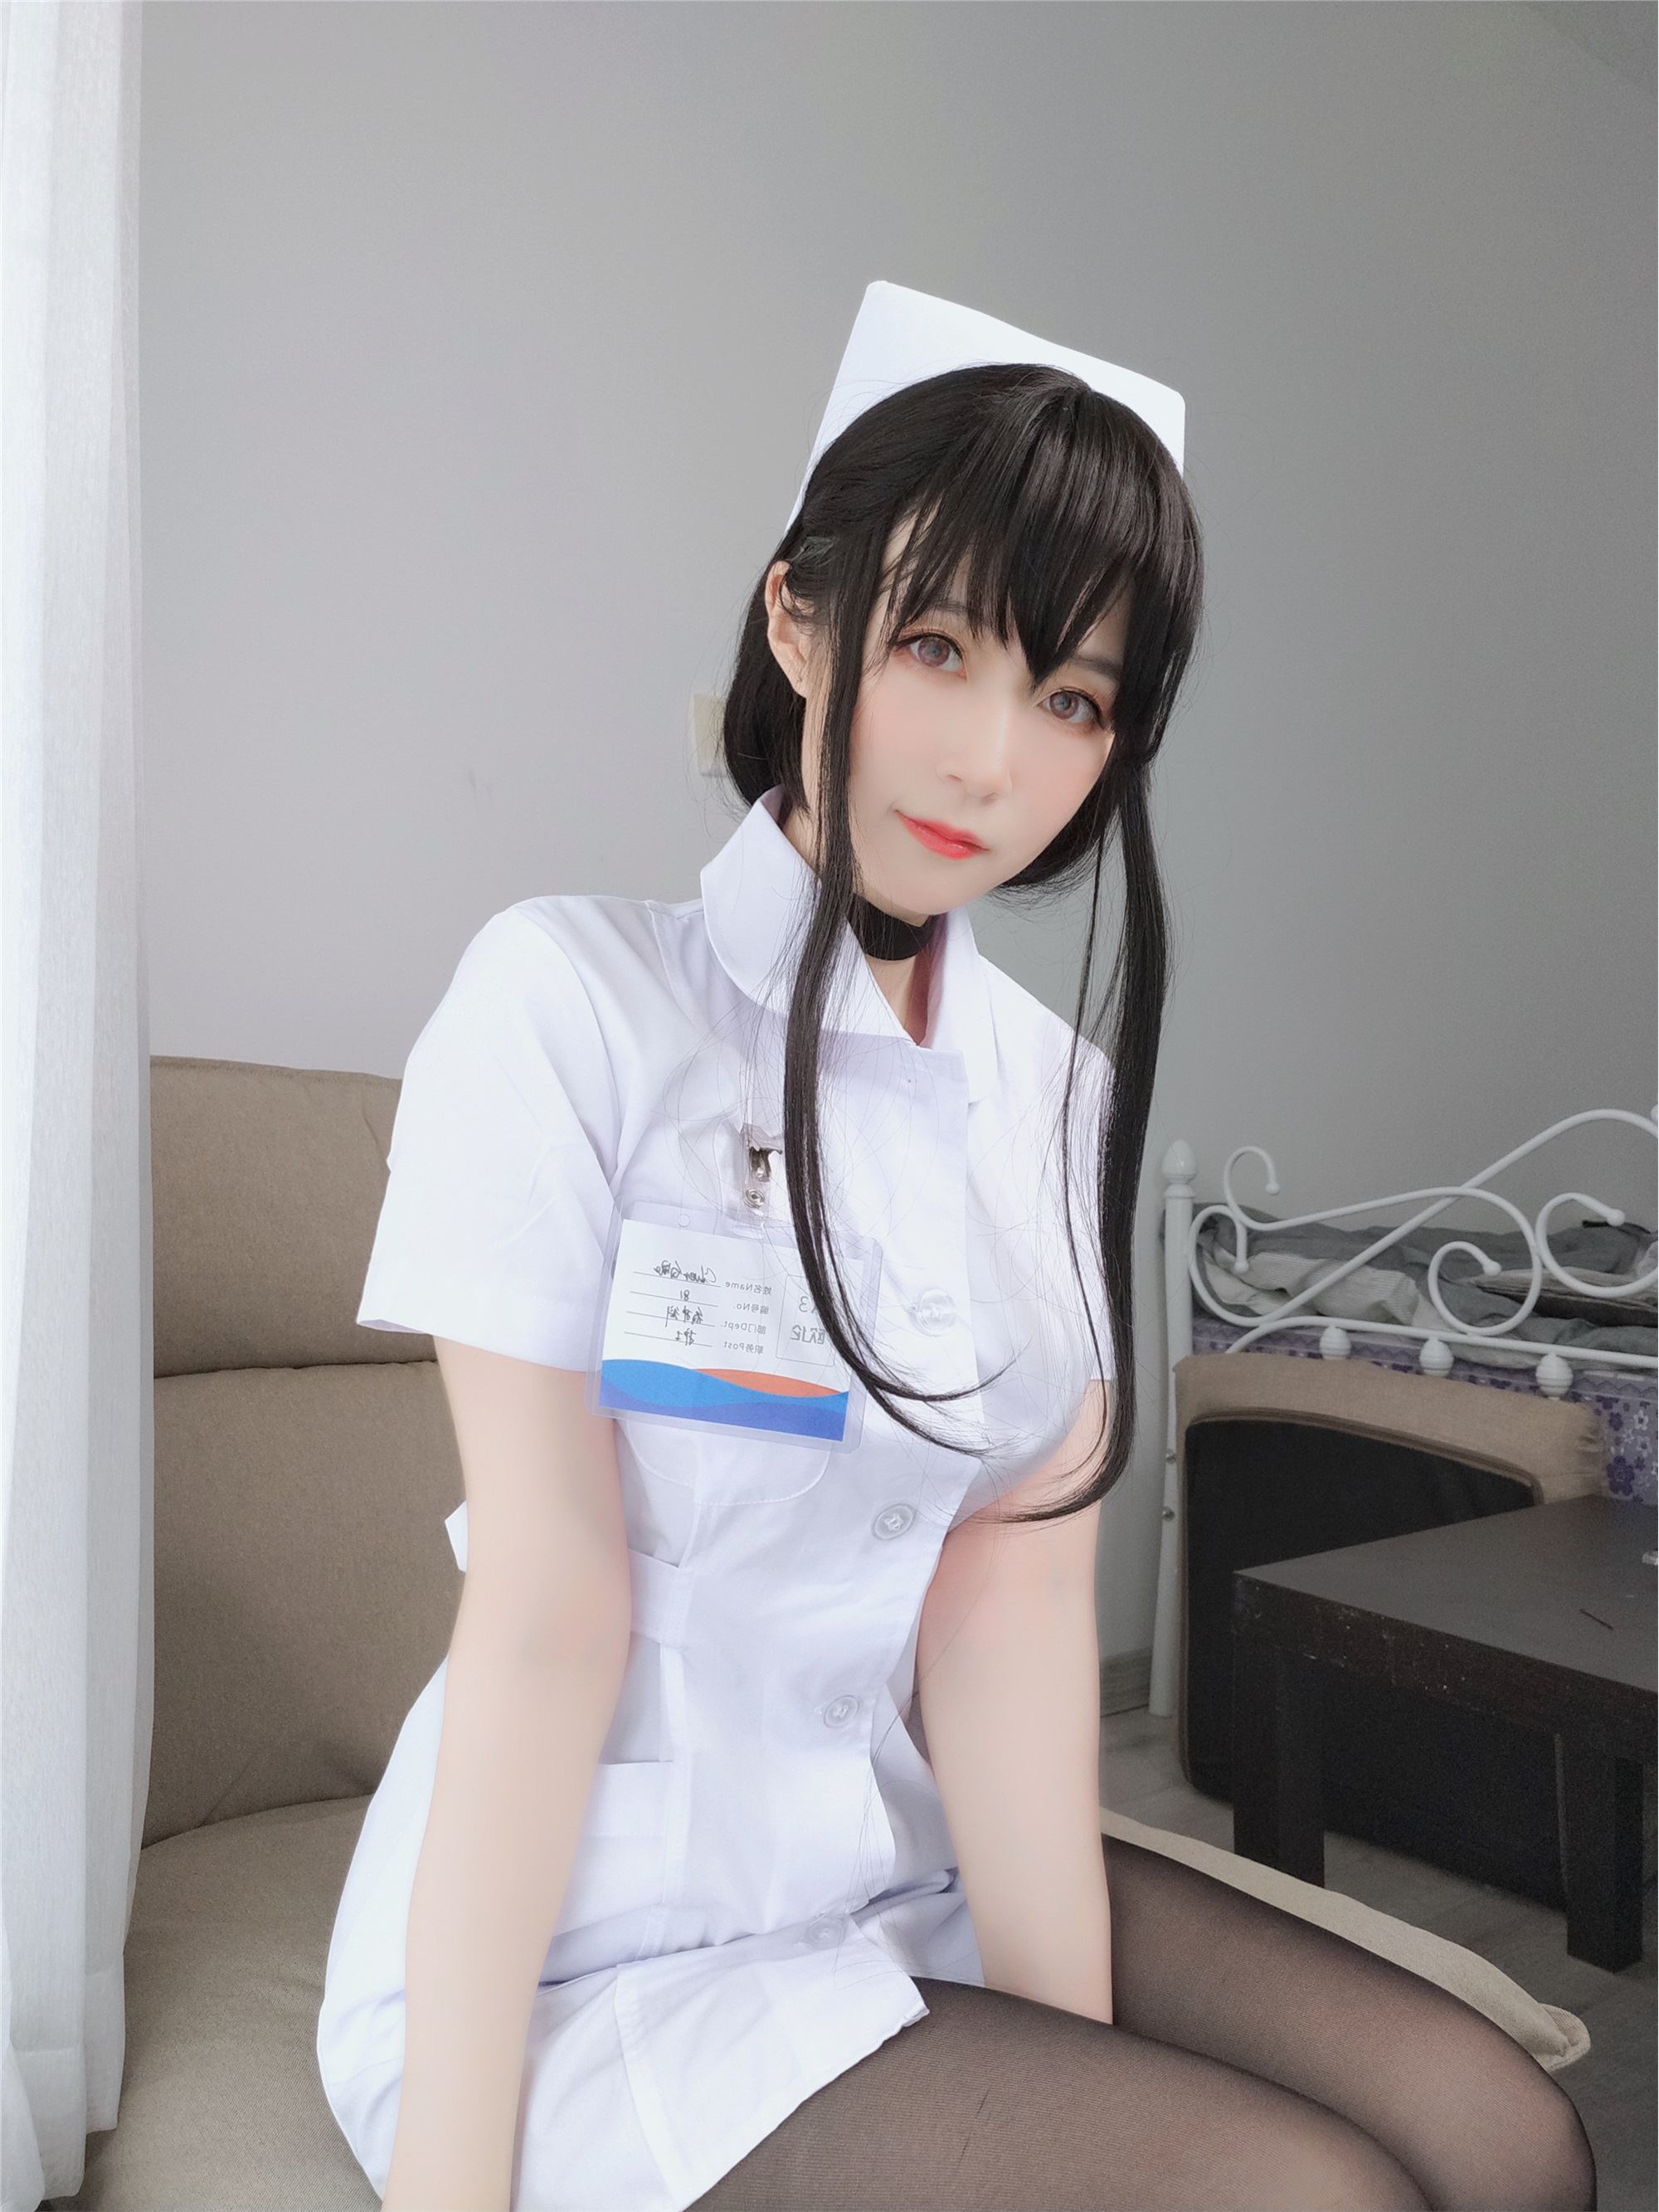 Miss Coser, sister Baiyin, nurse with long hair